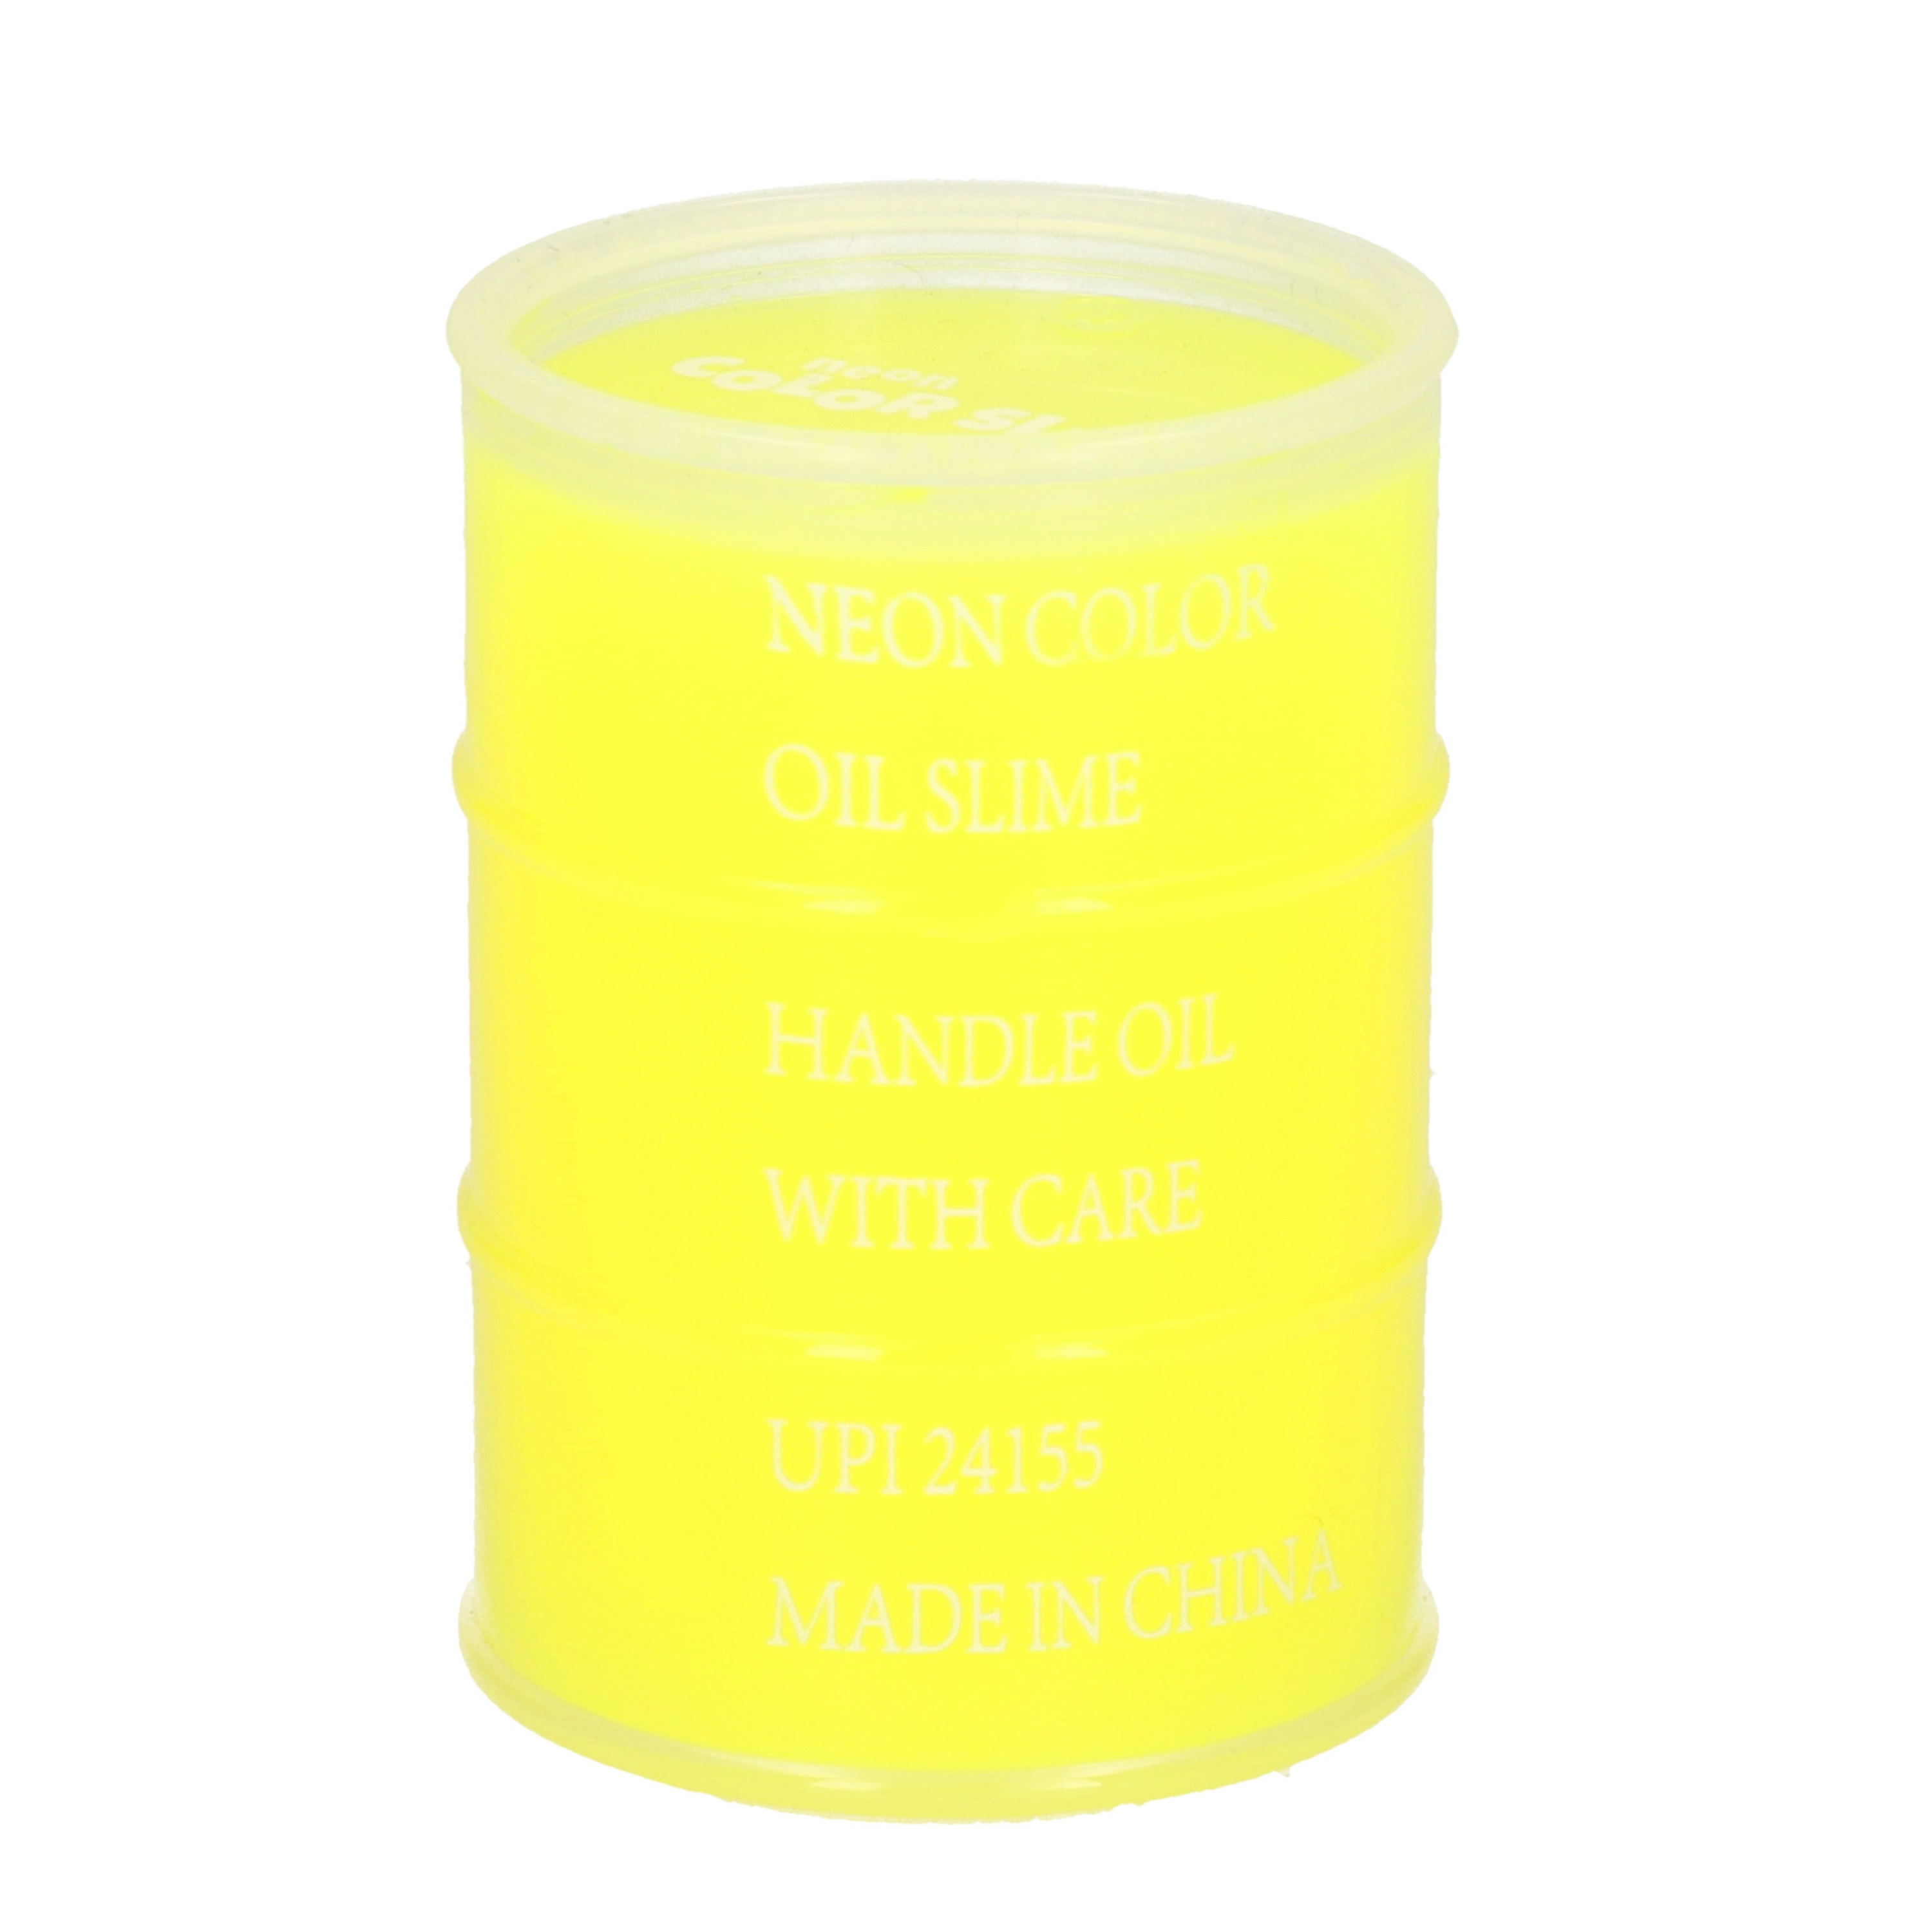 1x Potjes speelgoed/hobby slijm geel in olievat 5,5 x 8 cm 150 ml inhoud